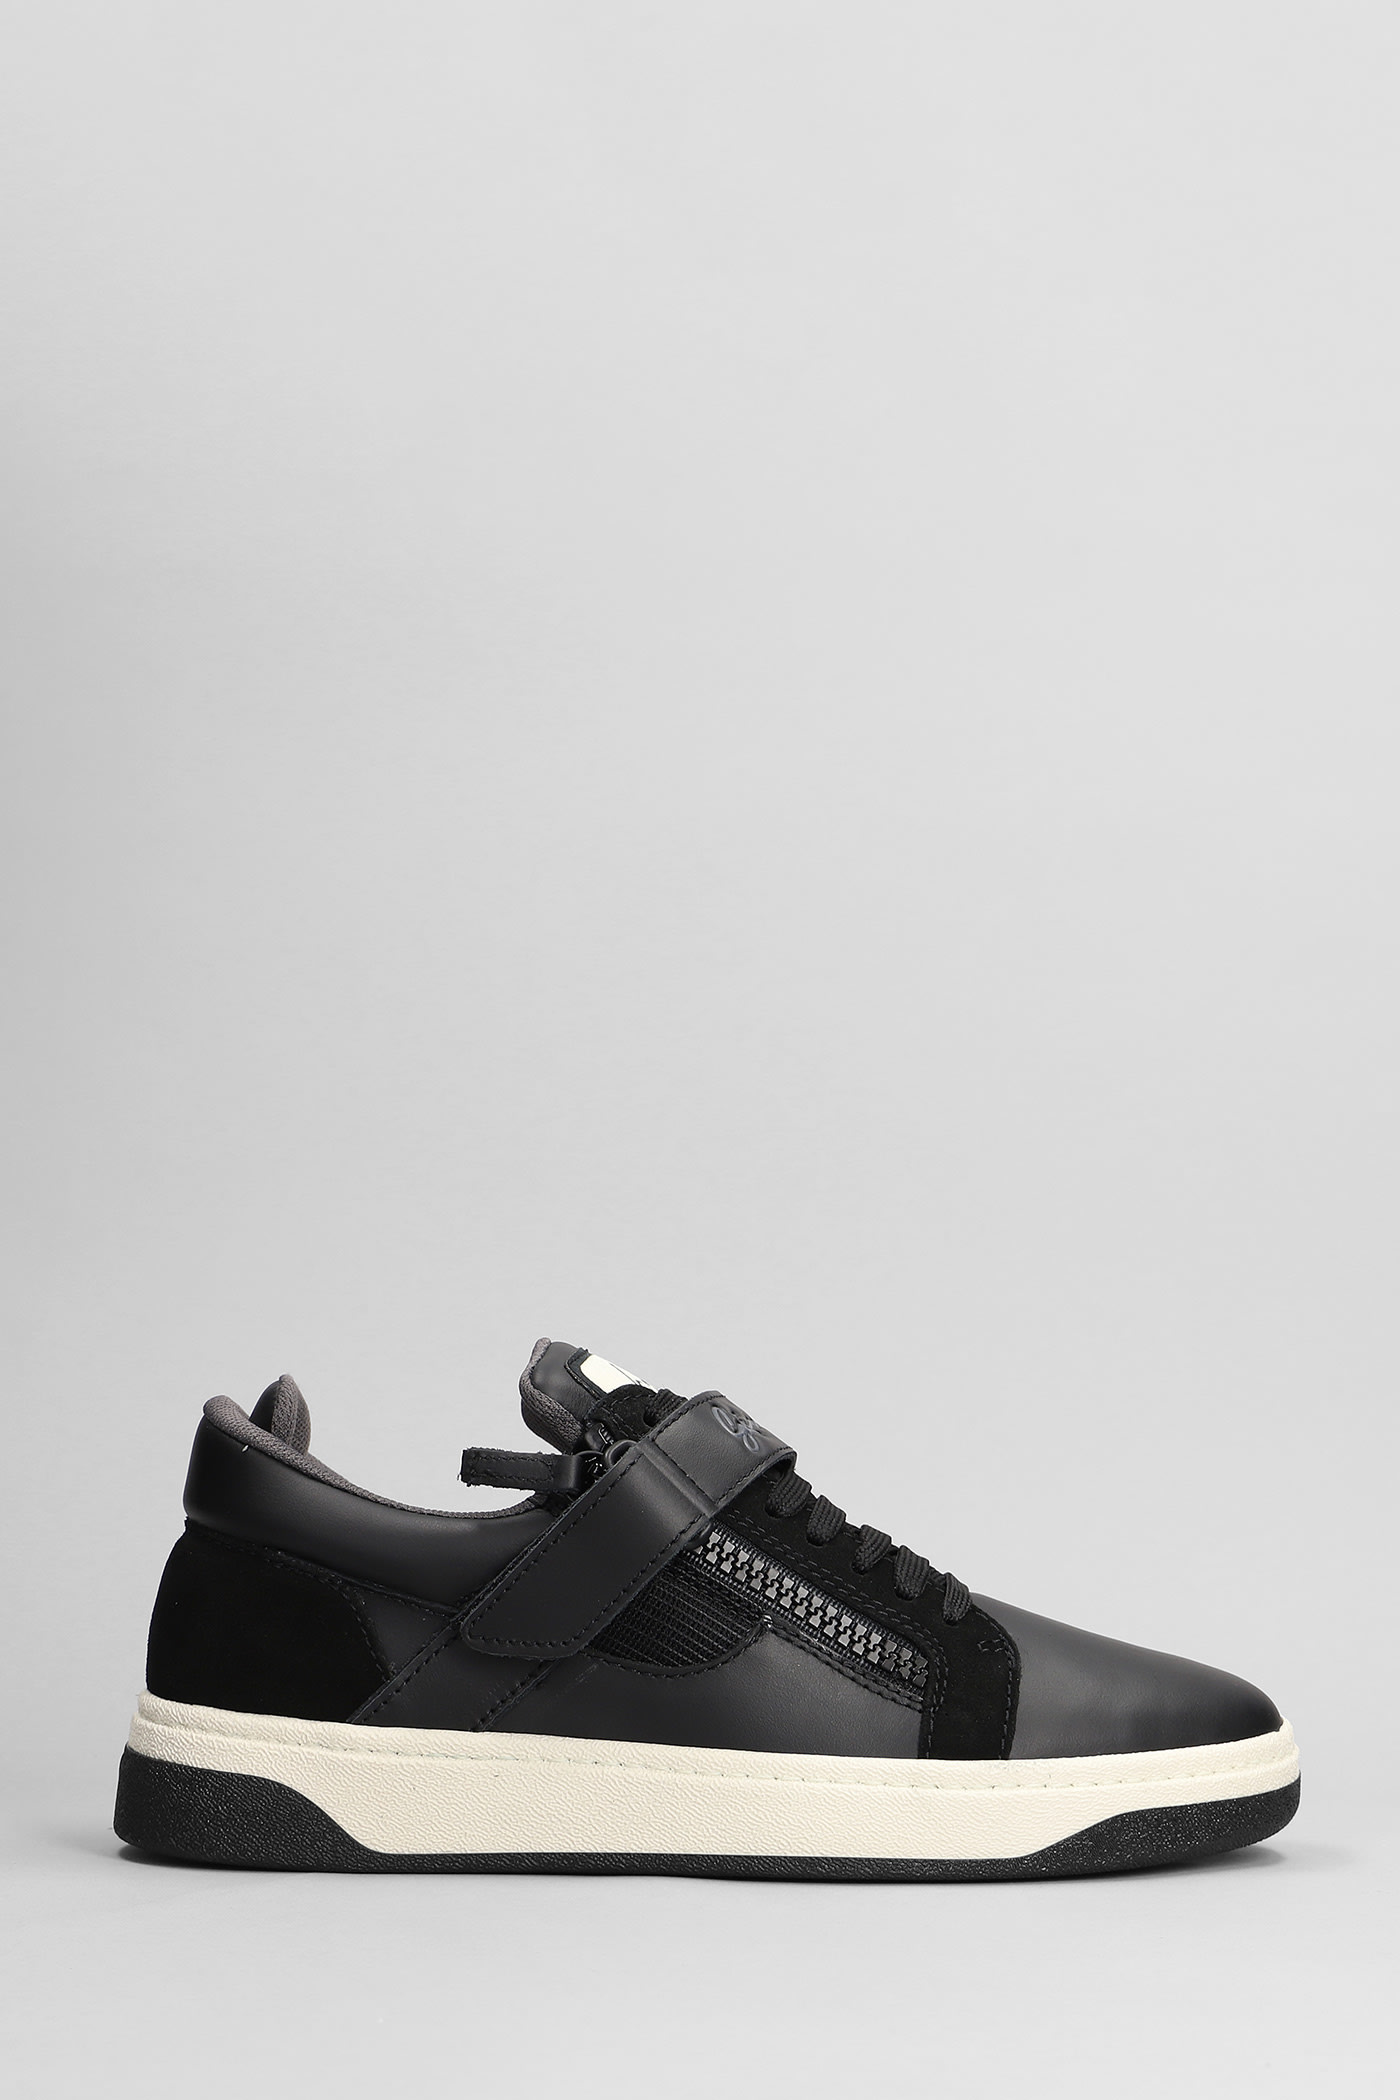 Giuseppe Zanotti Gz94 Sneakers In Black Leather